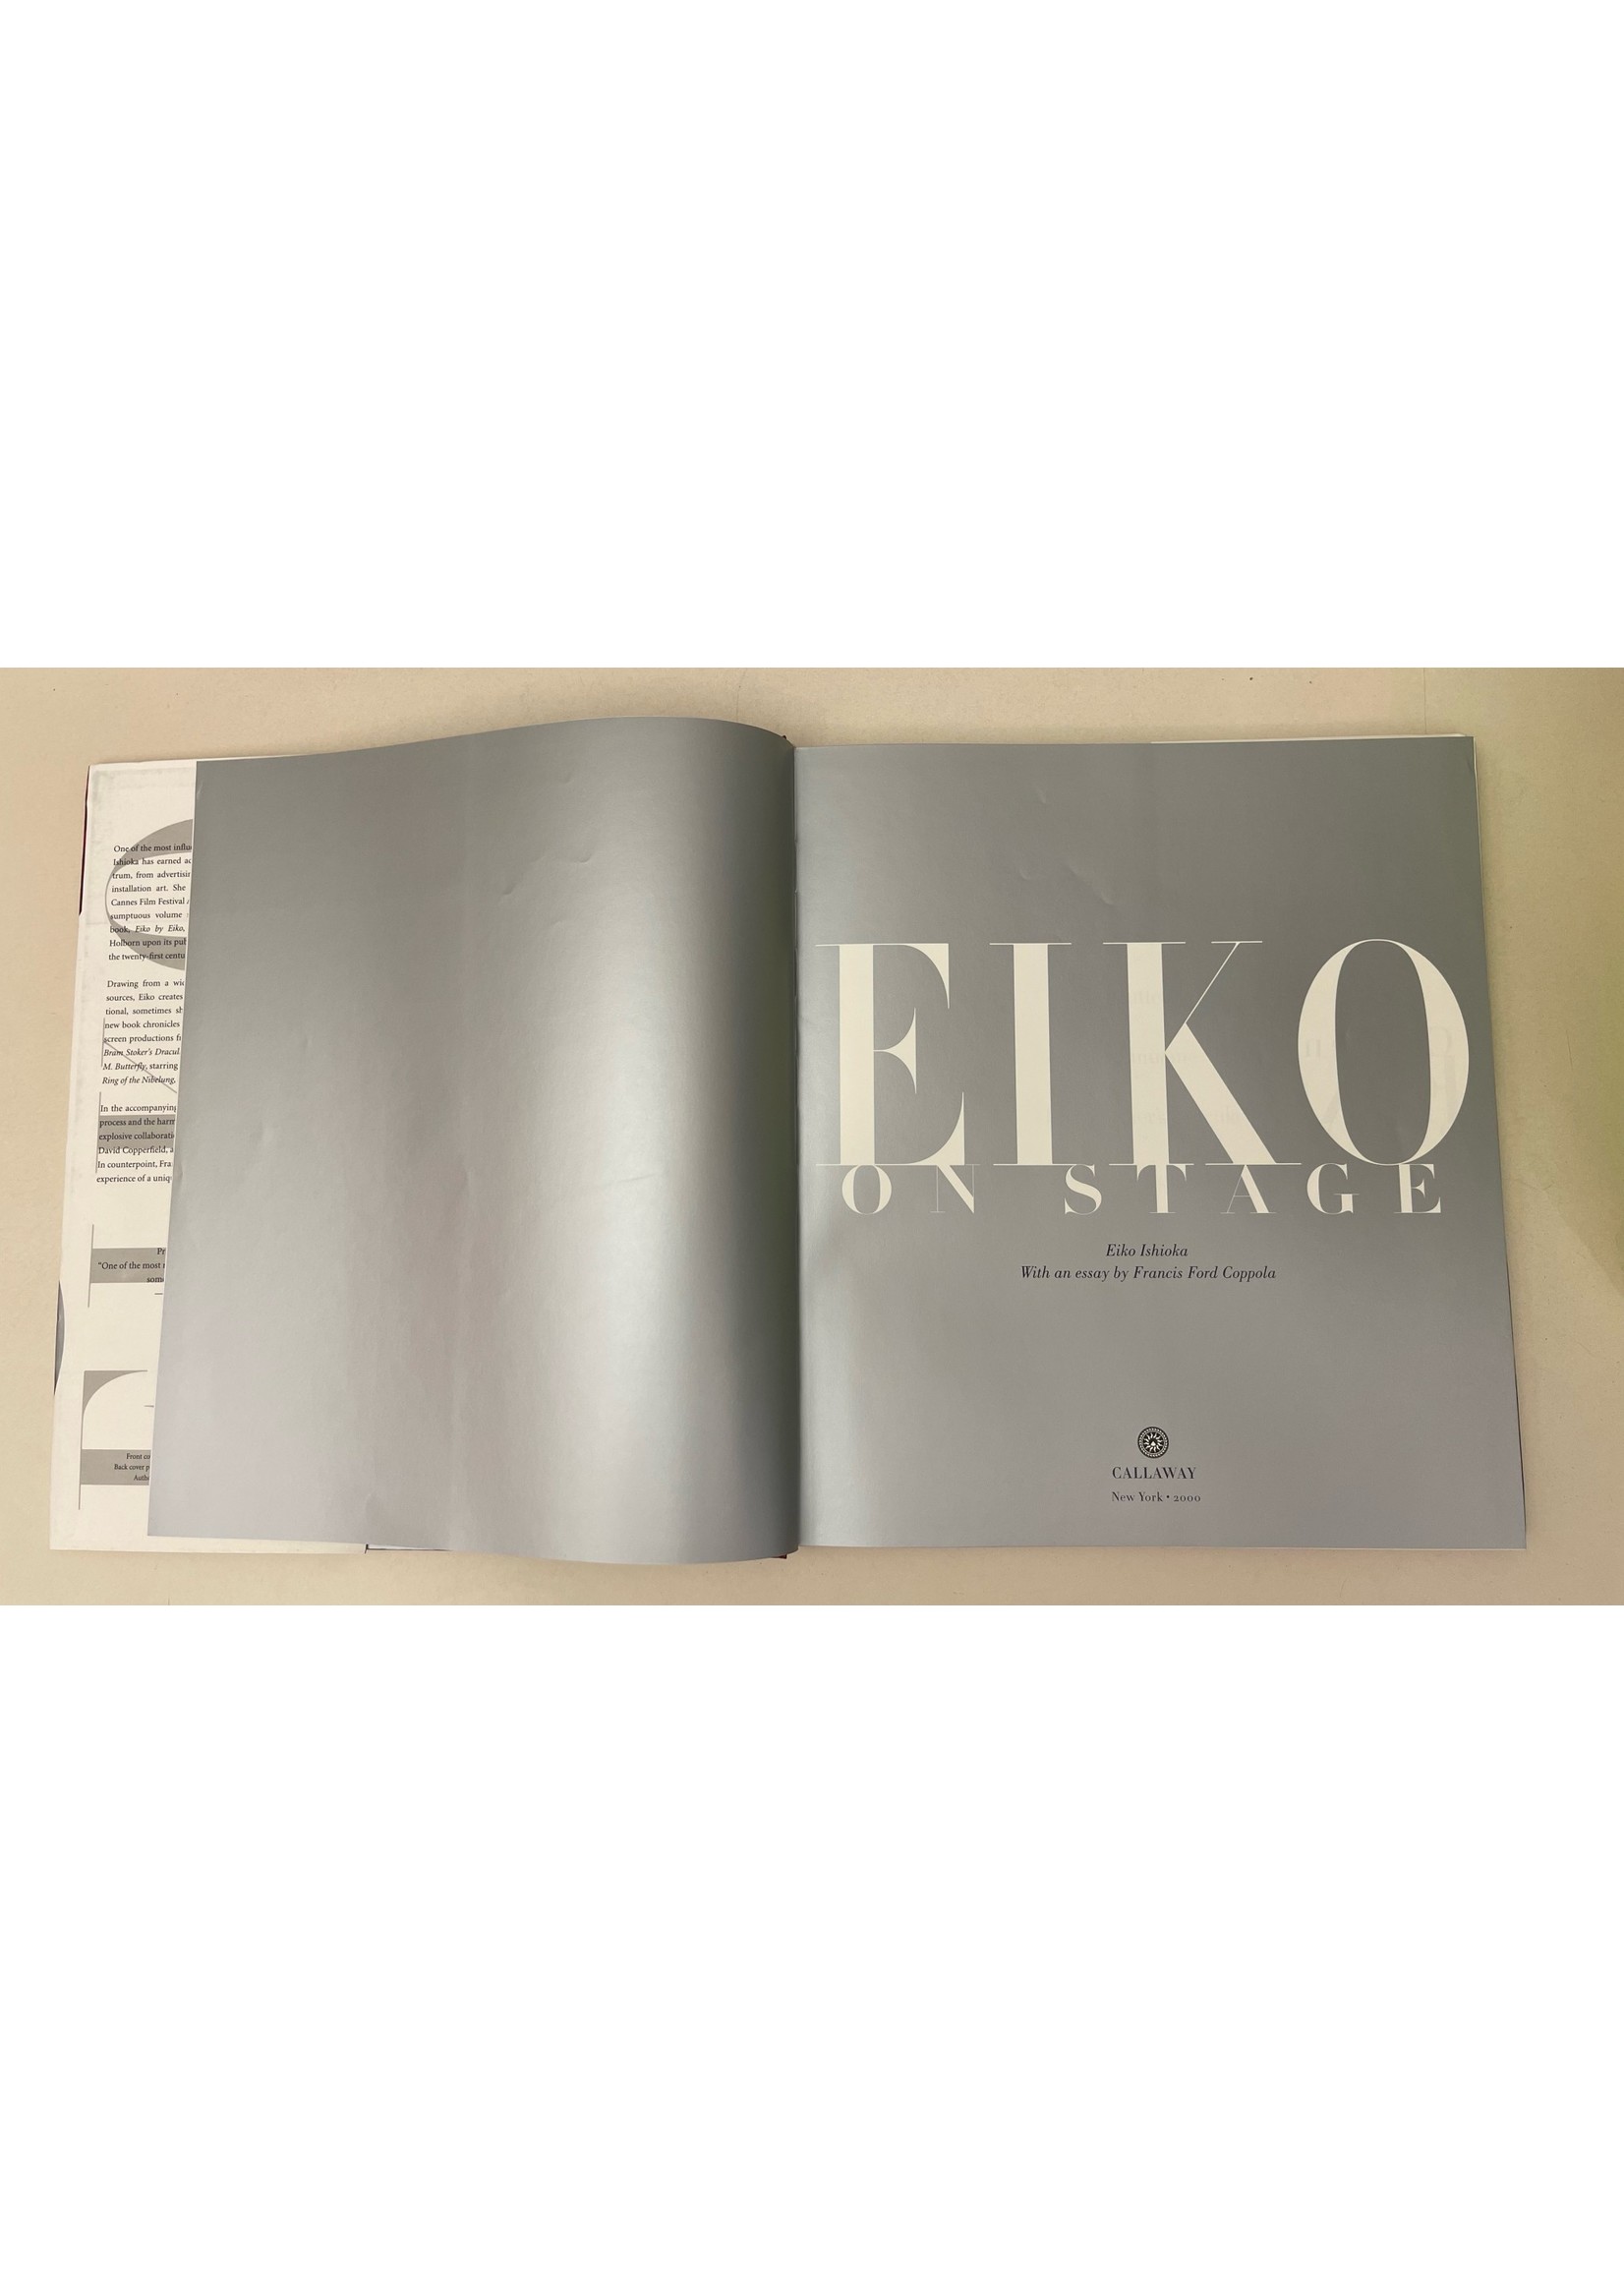 Eiko on Stage - Ishioka, Eiko